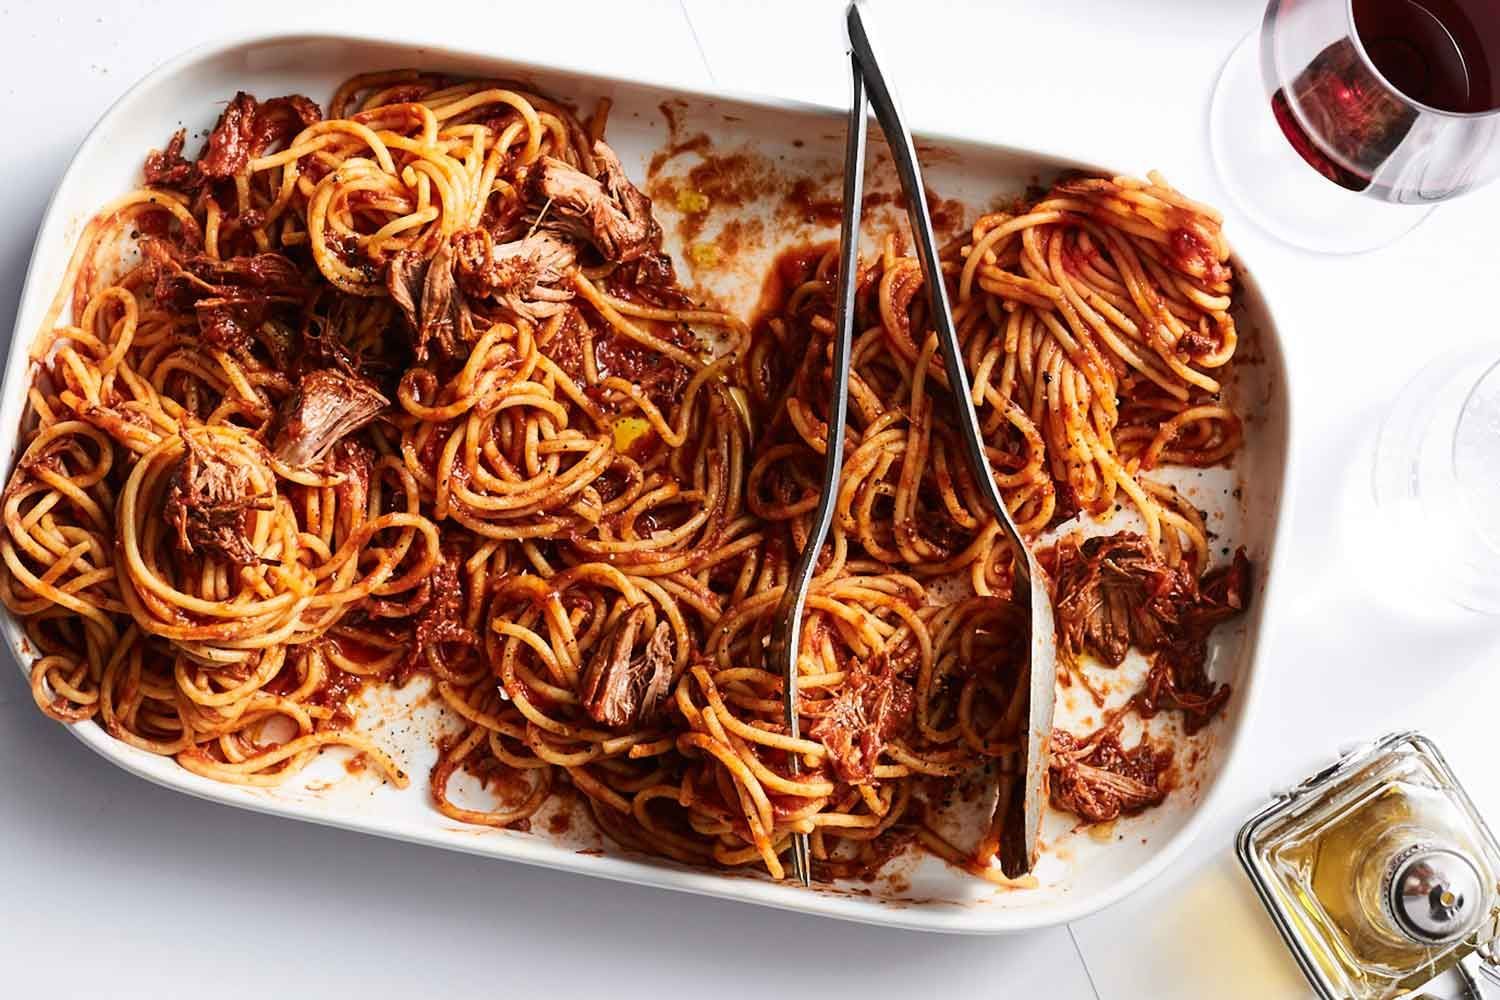 Some spaghetti. Спагетти болоньезе. Спагетти по болонски. Спагетти болоньезе Чайханы. Спагетти с фаршем в томатном соусе в духовке.